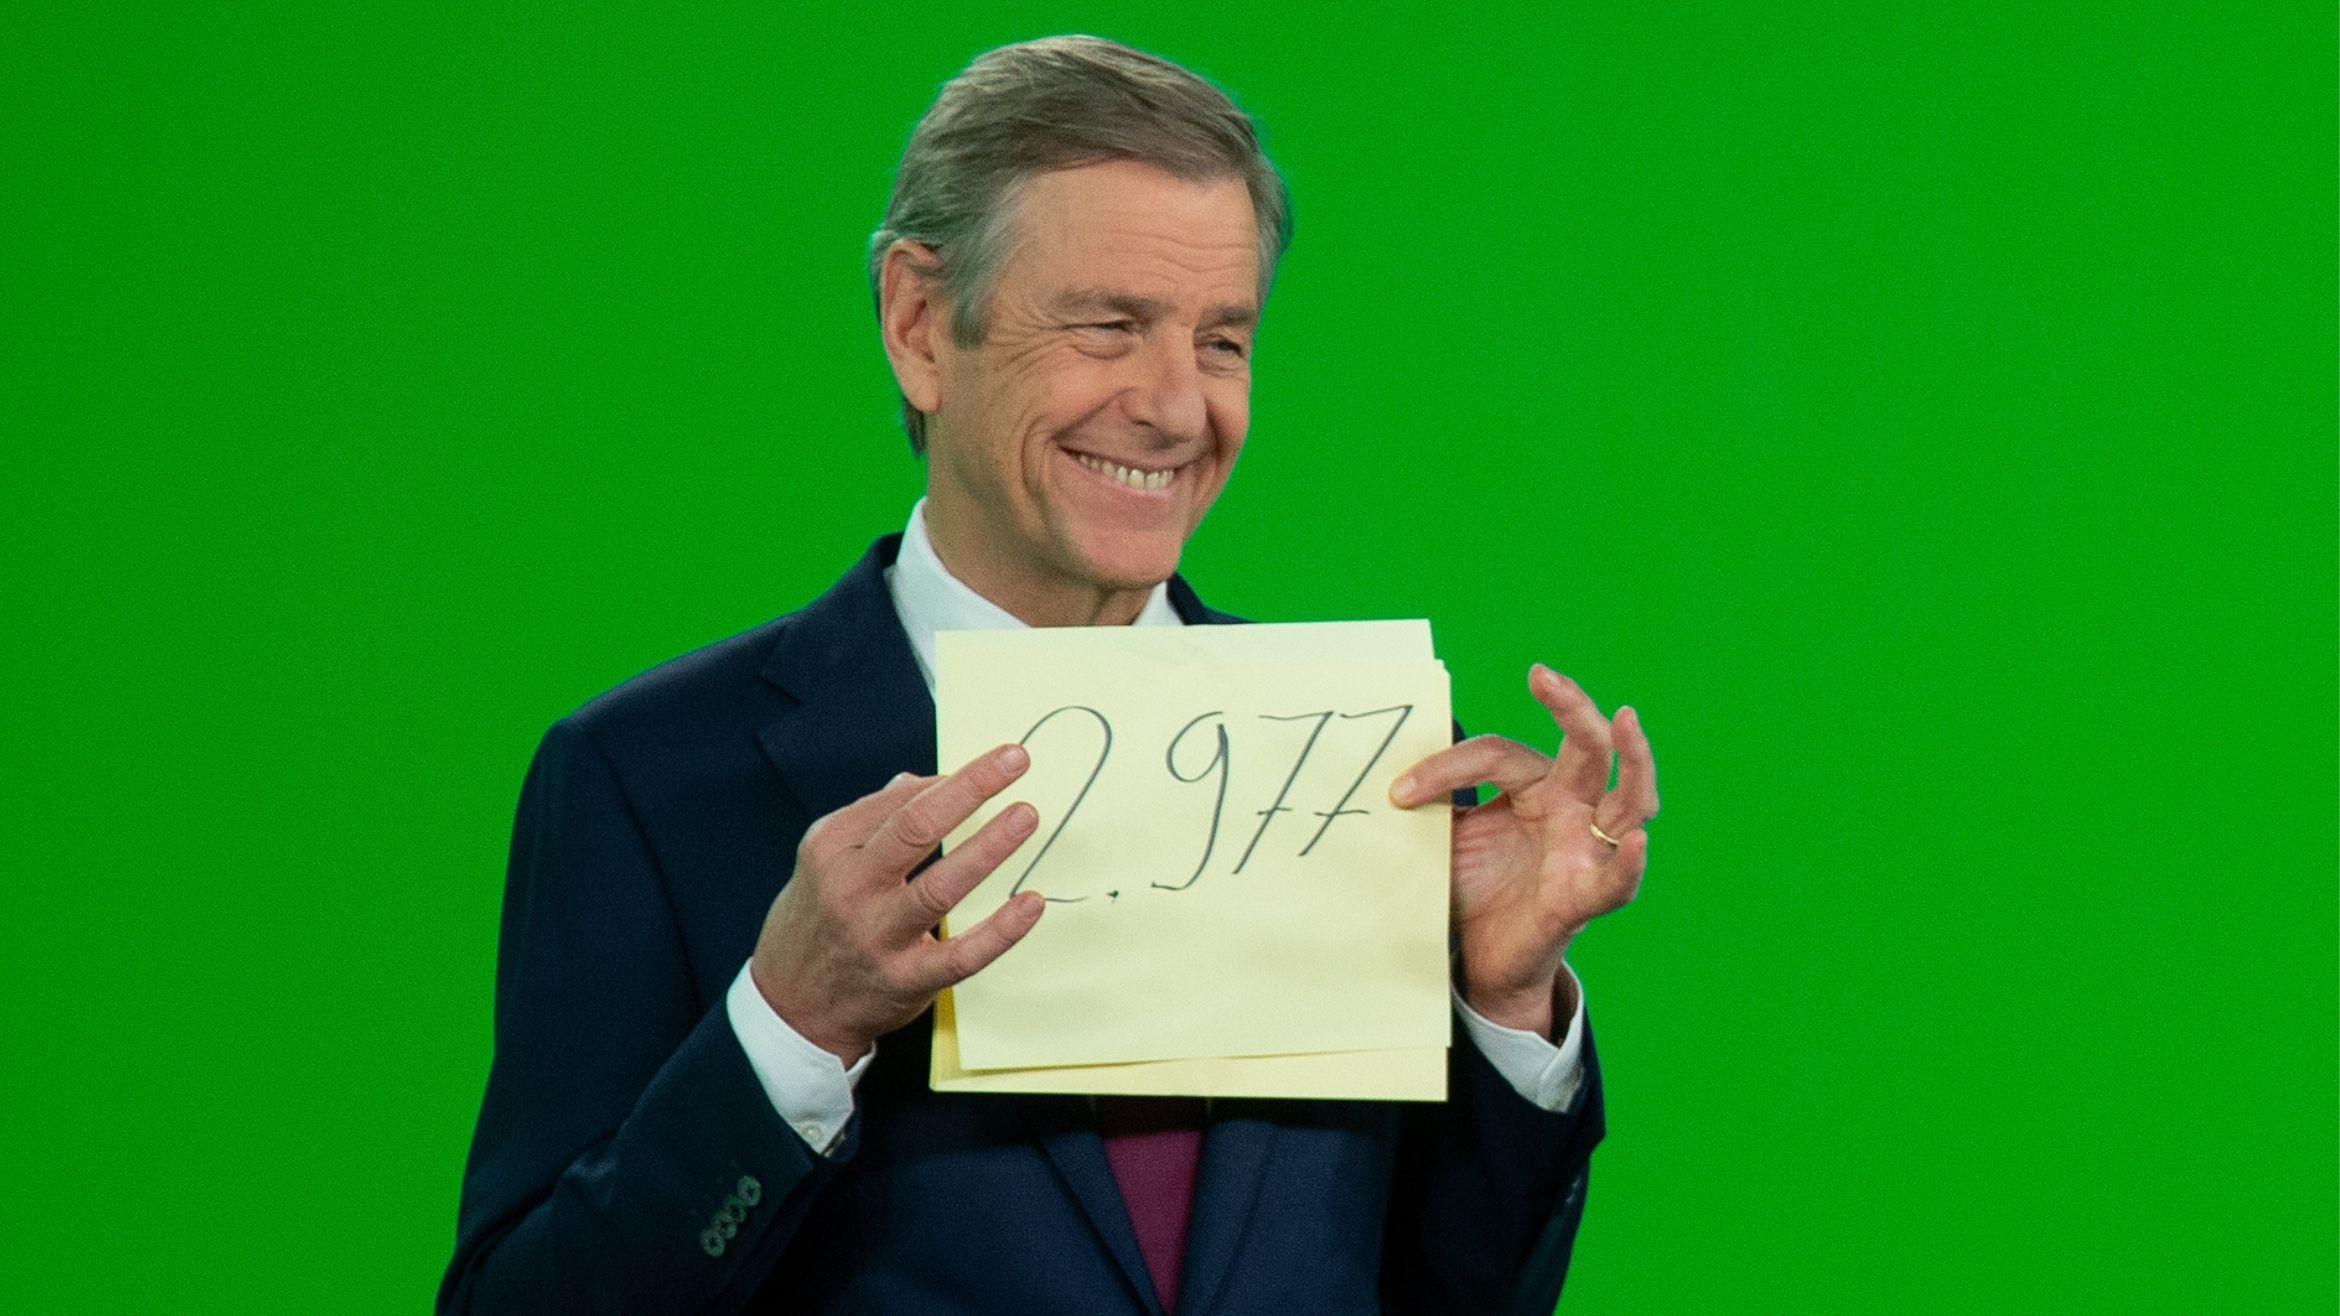 Nach 2977 Sendungen ist Schluss. Claus Kleber verabschiedet sich als Moderator des ZDF-"heute journals" -